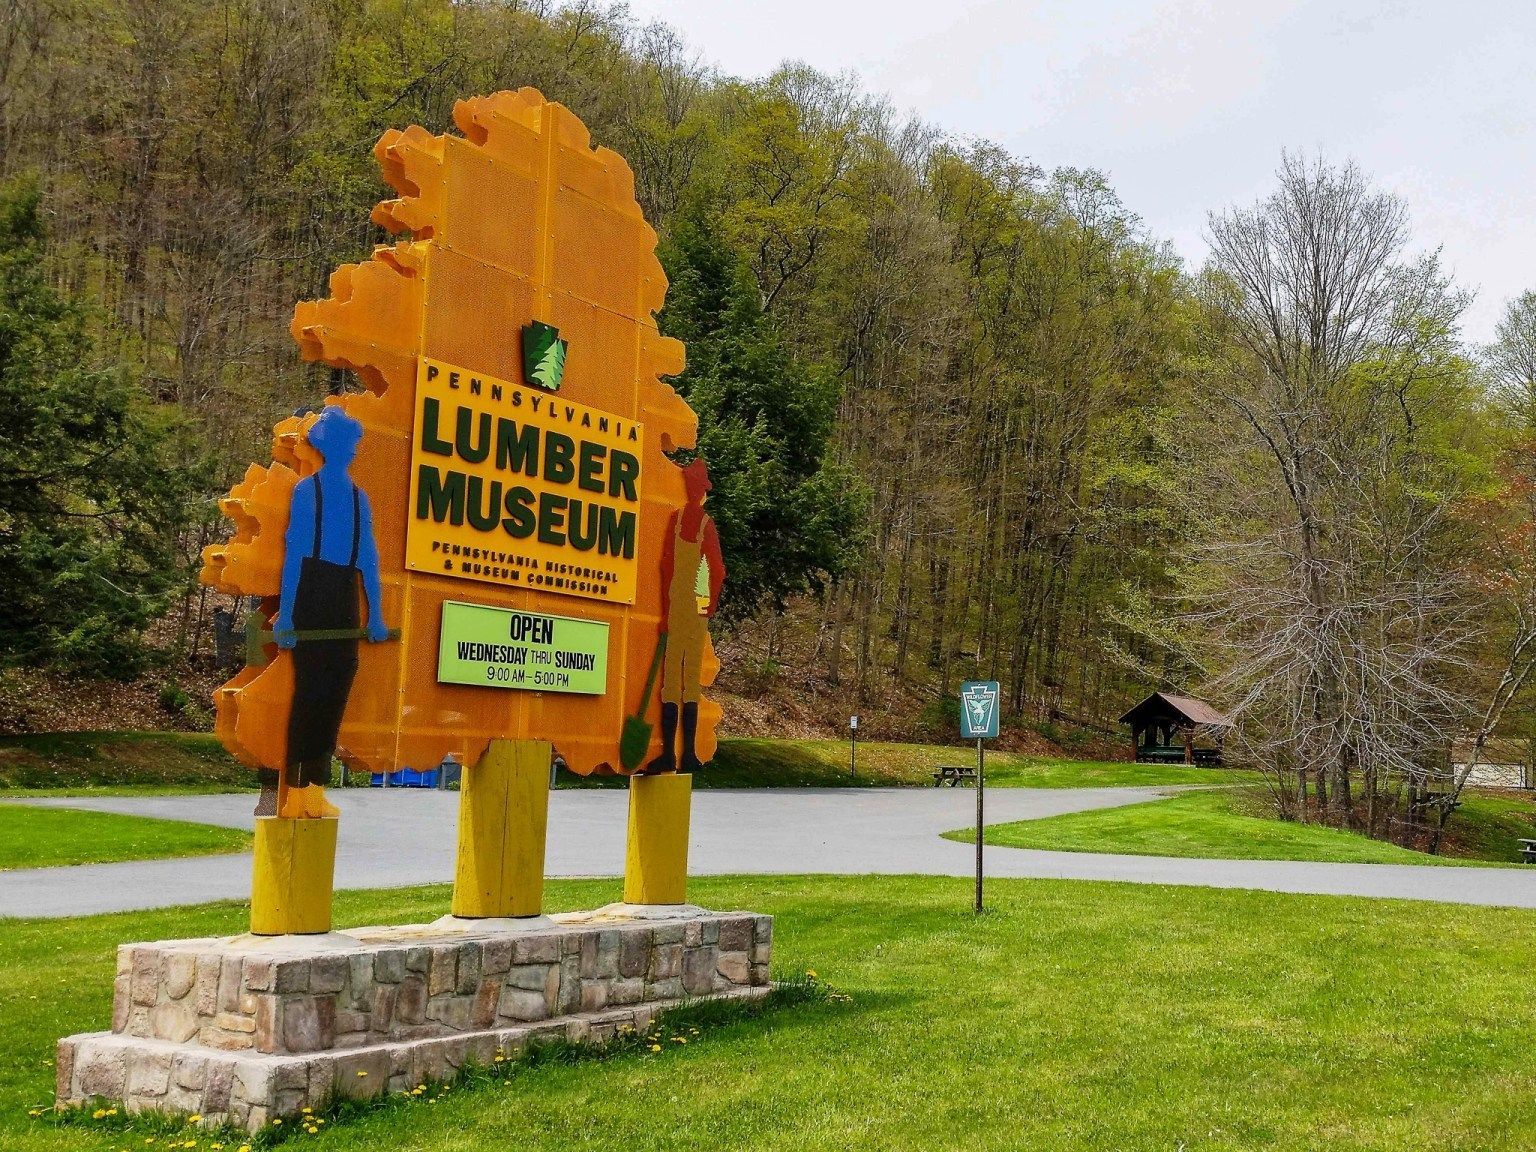 Pennsylvania Lumber Museum